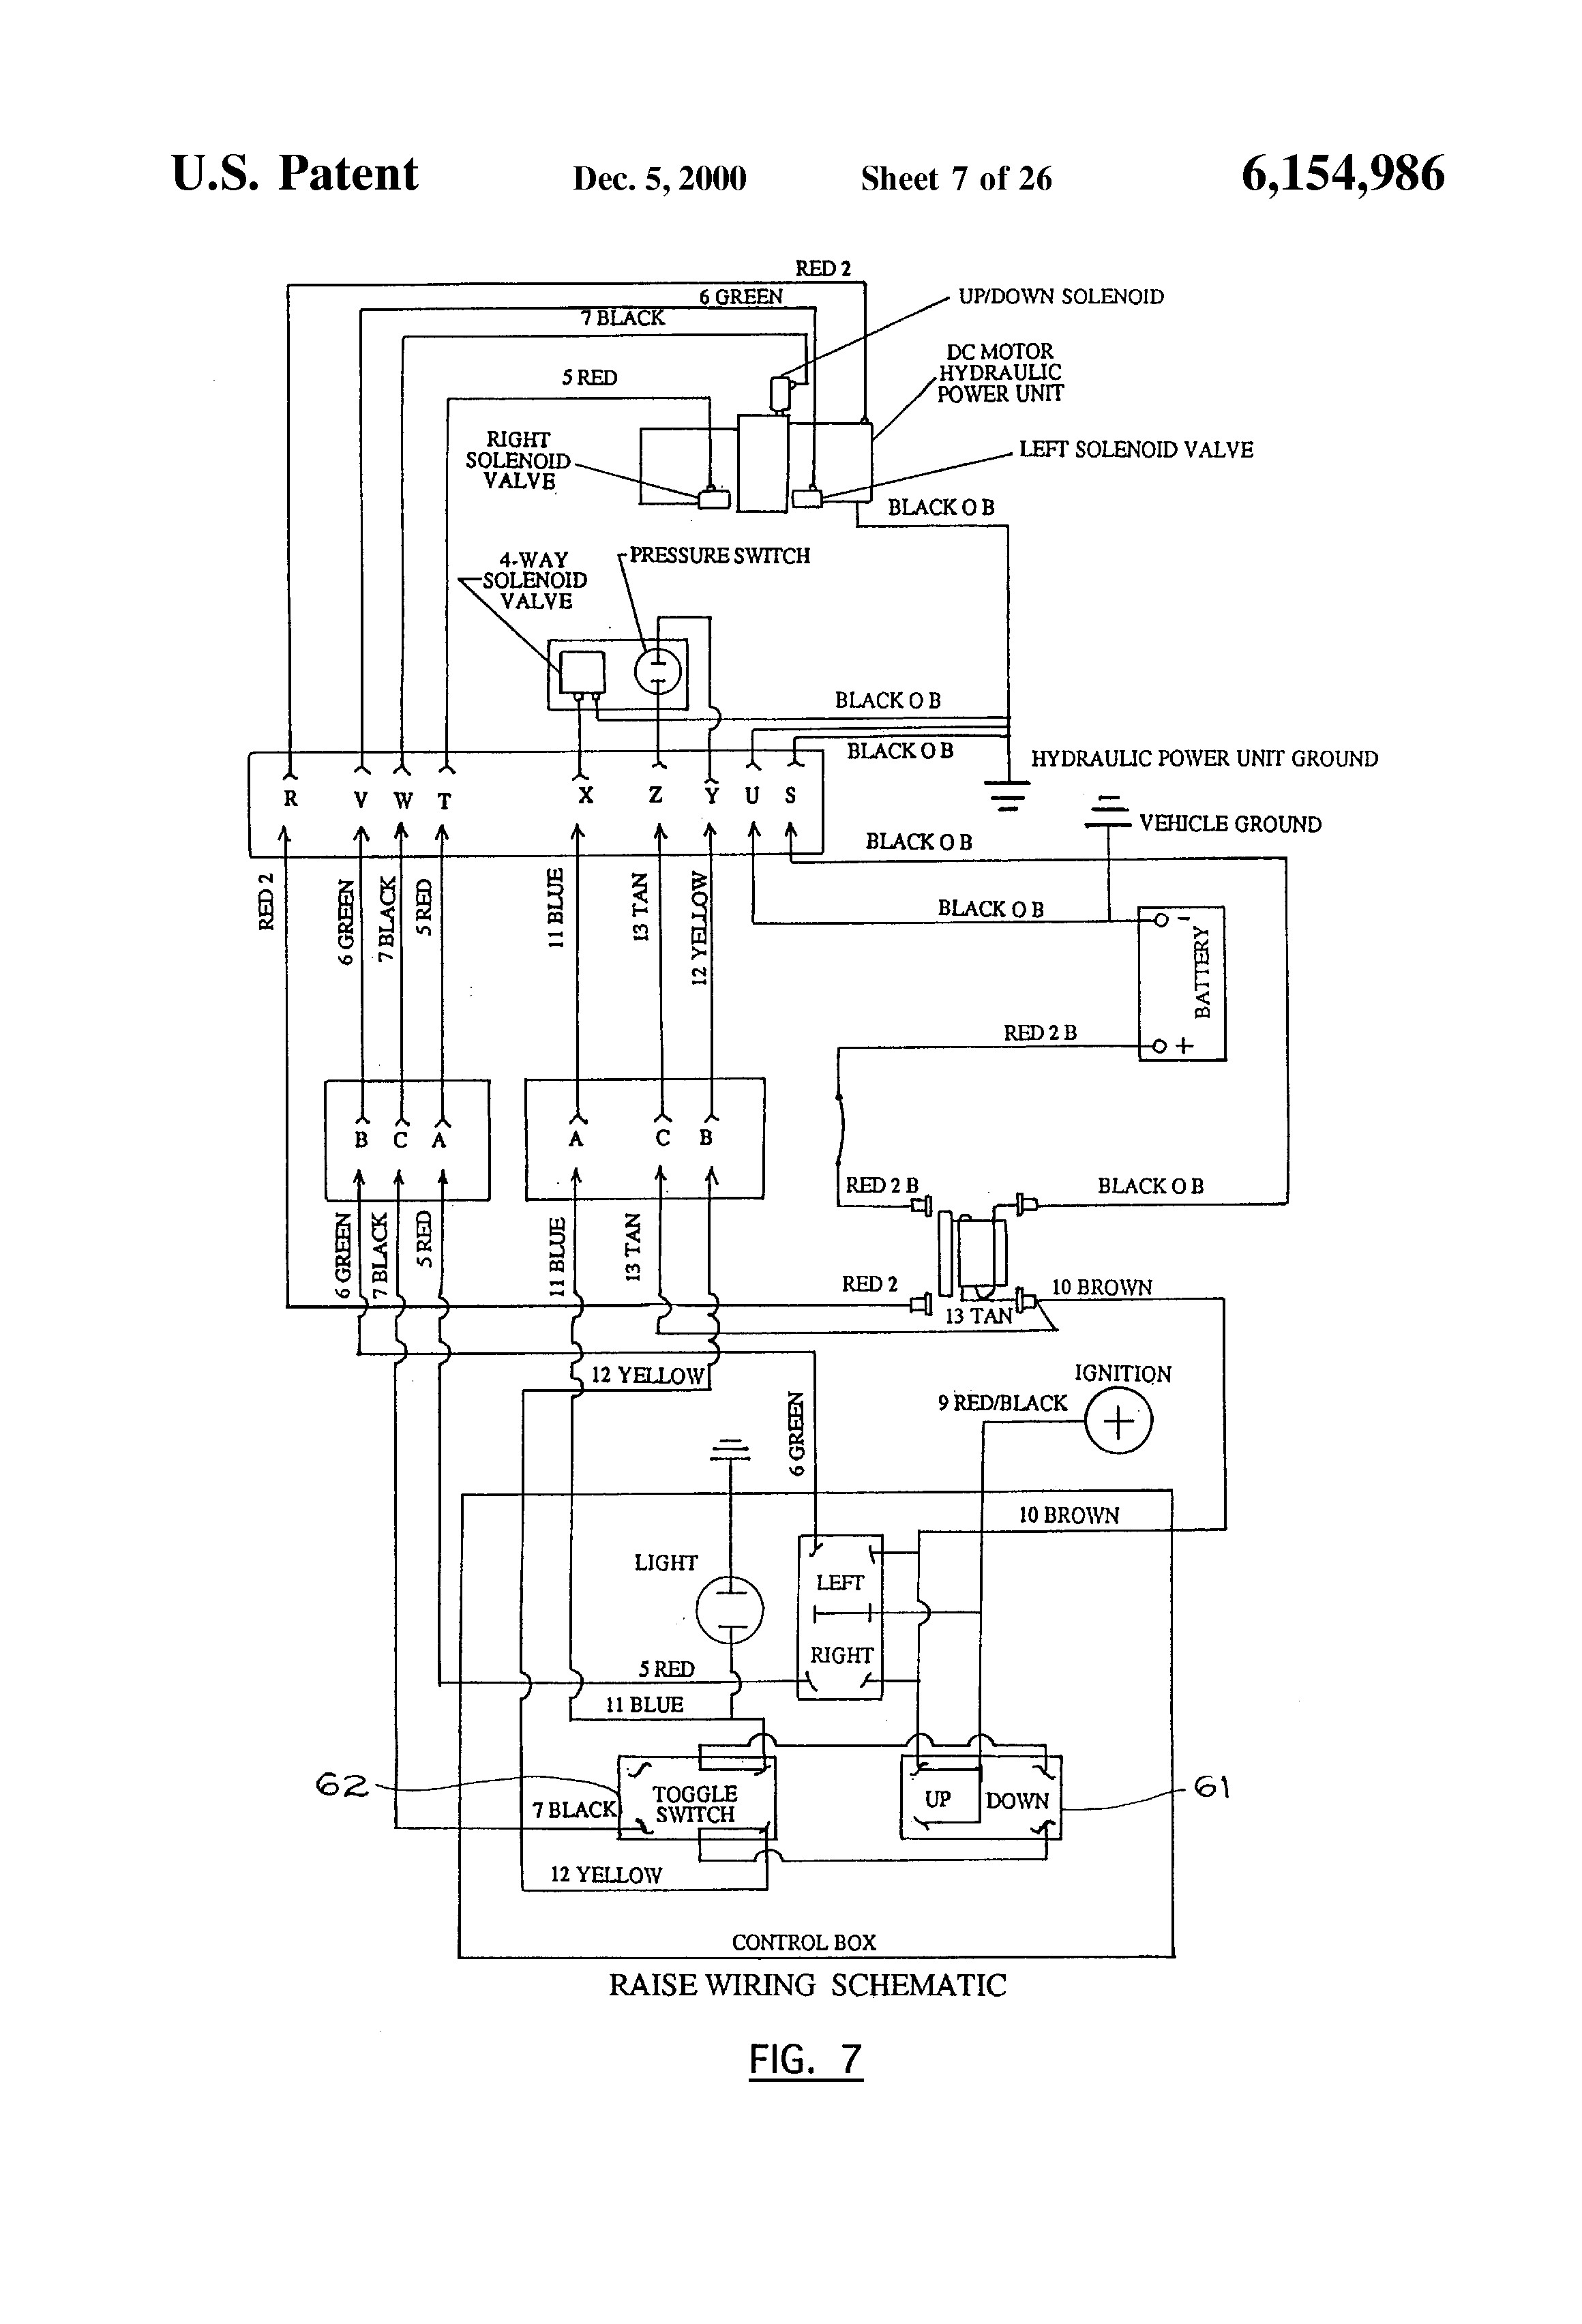 Chevy Western Unimount Wiring Diagram from schematron.org